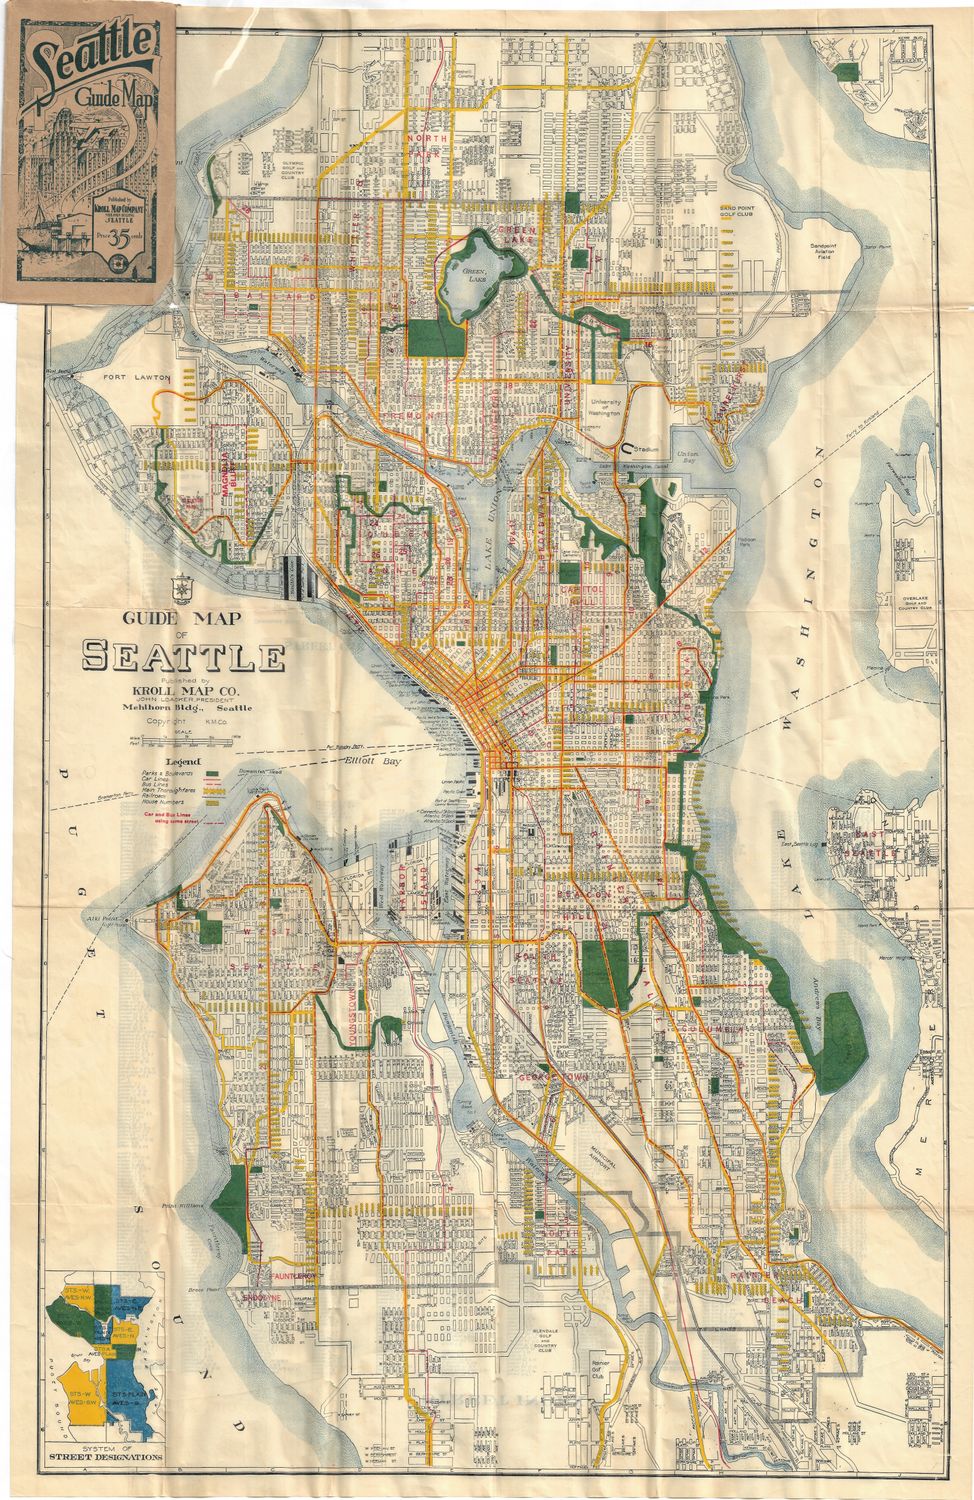 1935 Map of Seattle, Washington by Kroll under John Loacker